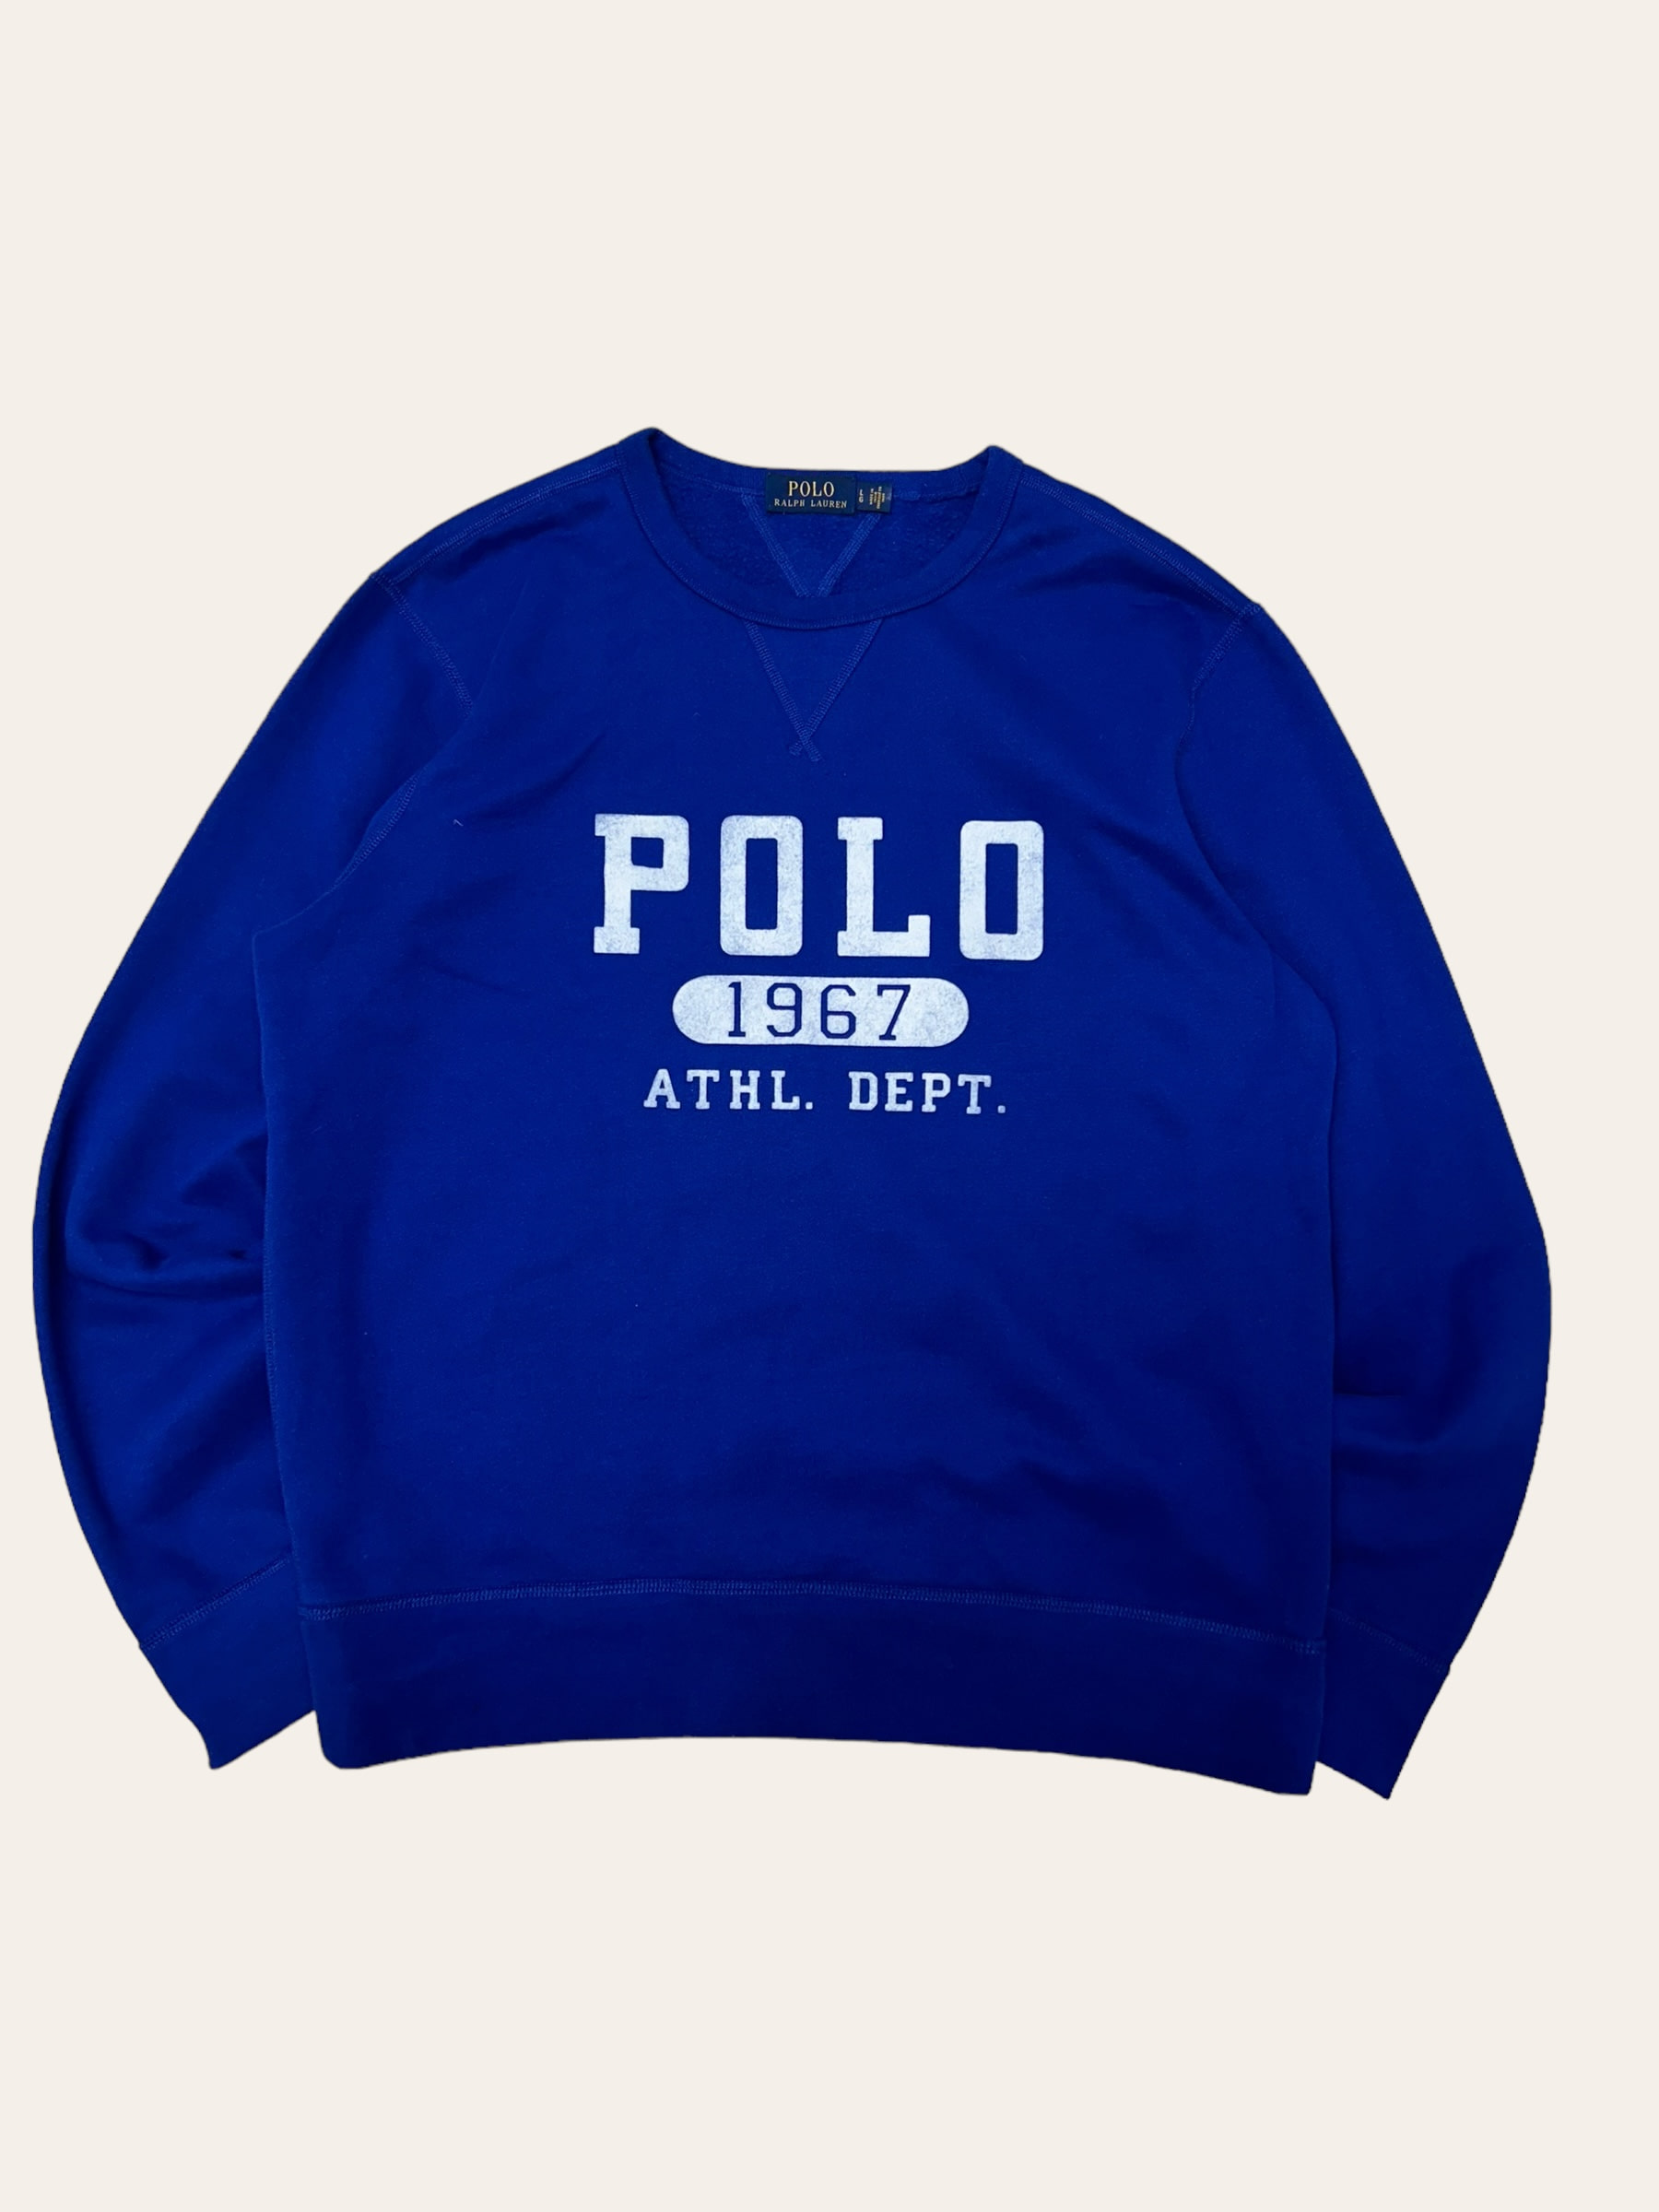 Polo ralph lauren blue velvet logo sweatshirt L